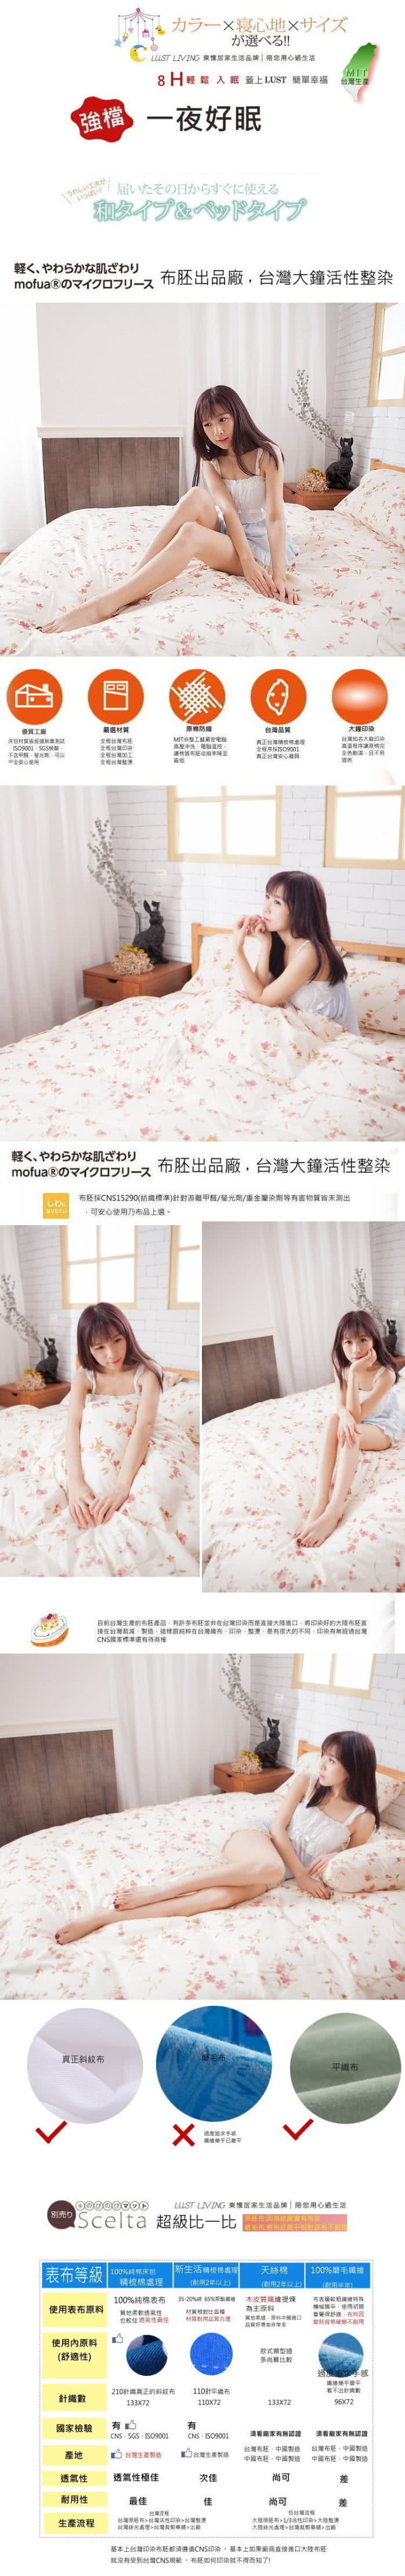 【Lust 生活寢具】法式玫瑰  100%純棉、雙人加大6尺床包/枕套/舖棉被套6X7尺、台灣製